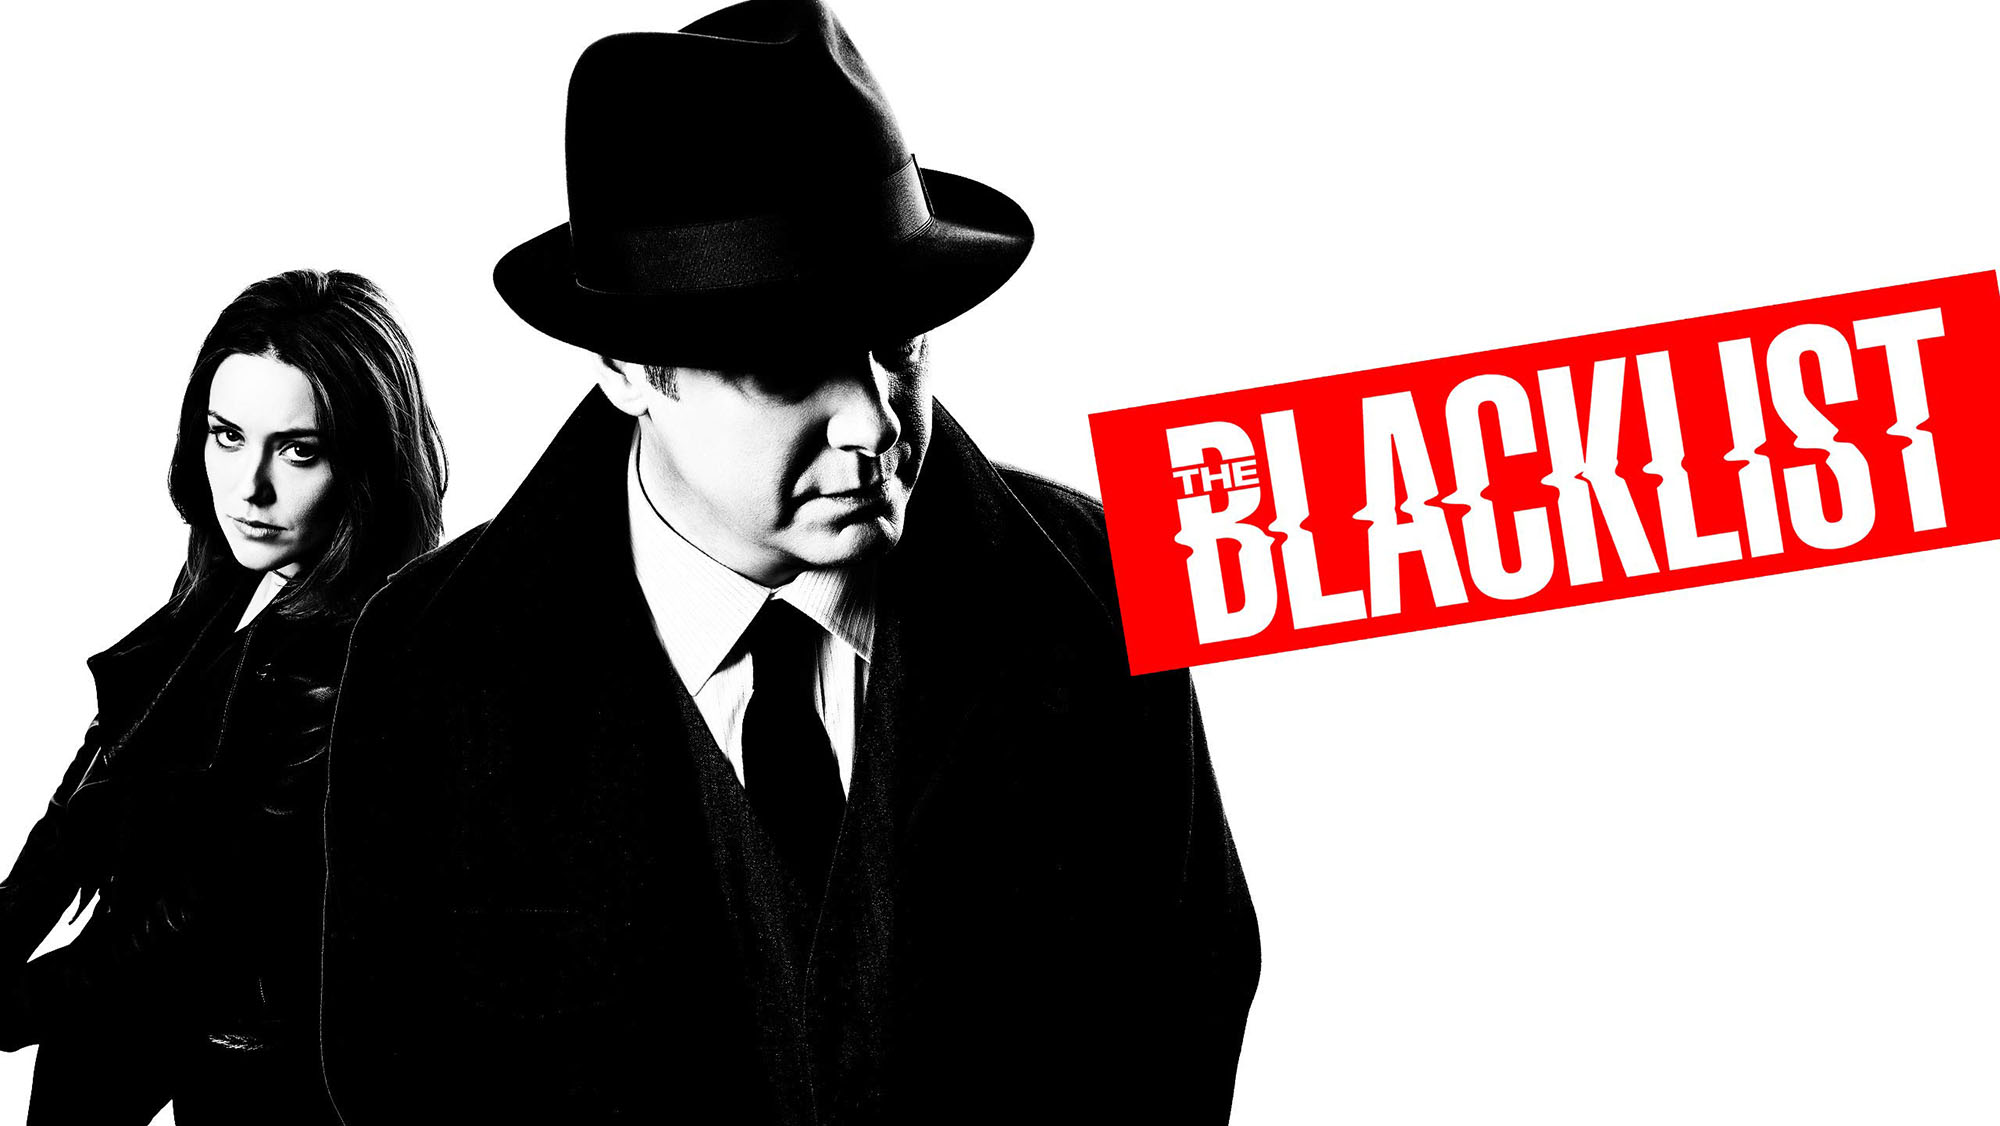 The Blacklist Staffel 8 Startet Mitte Juli Bei Netflix Jetzt Geht S Schneller Als Gedacht Seriesly Awesome